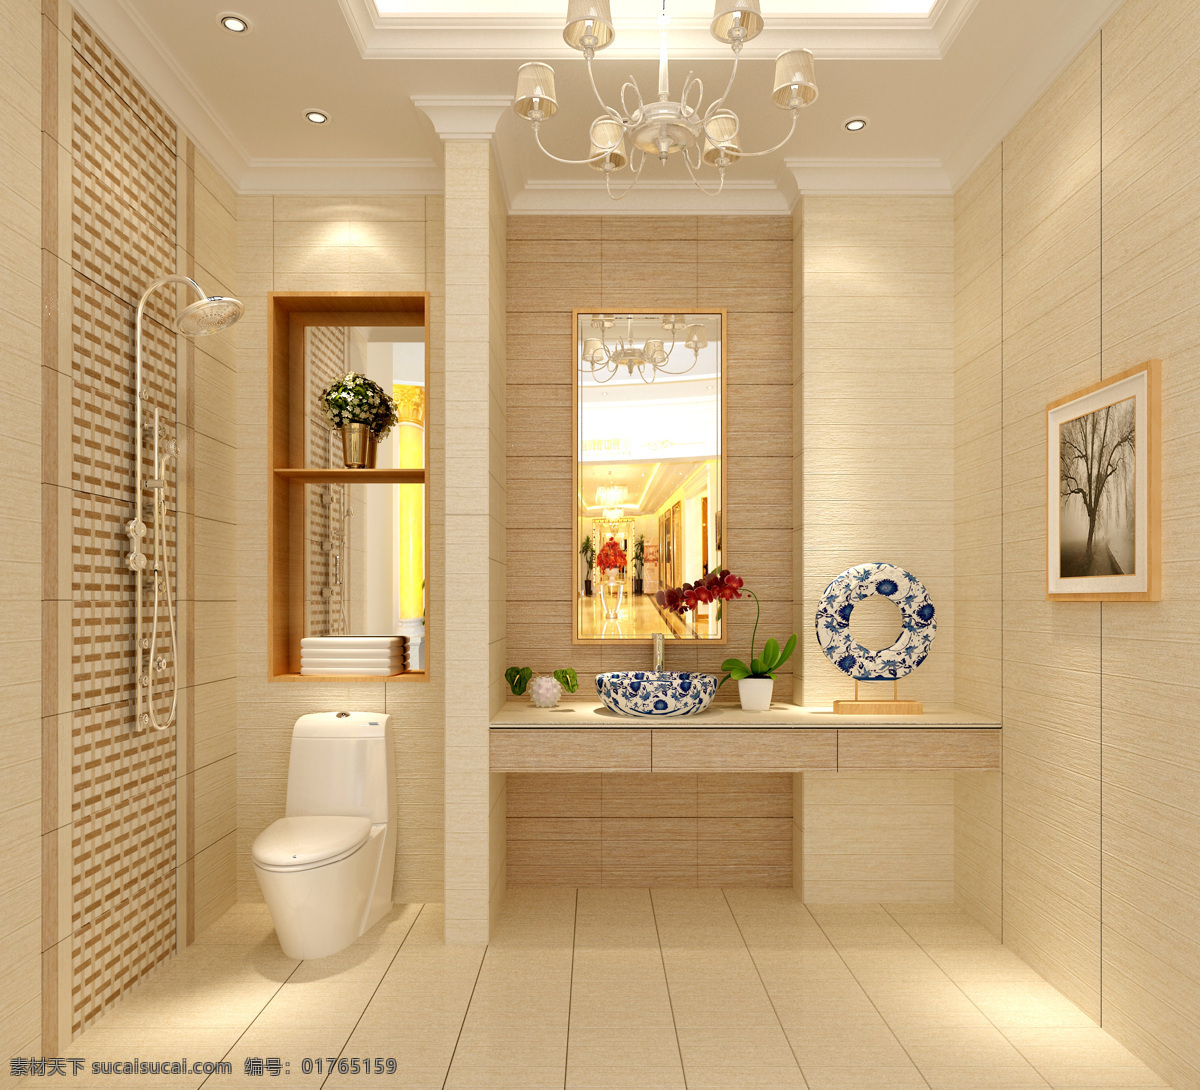 空间 设计图 环境设计 简洁 空间设计 室内设计 卫生间 卫浴 现代 空间设计图 家居装饰素材